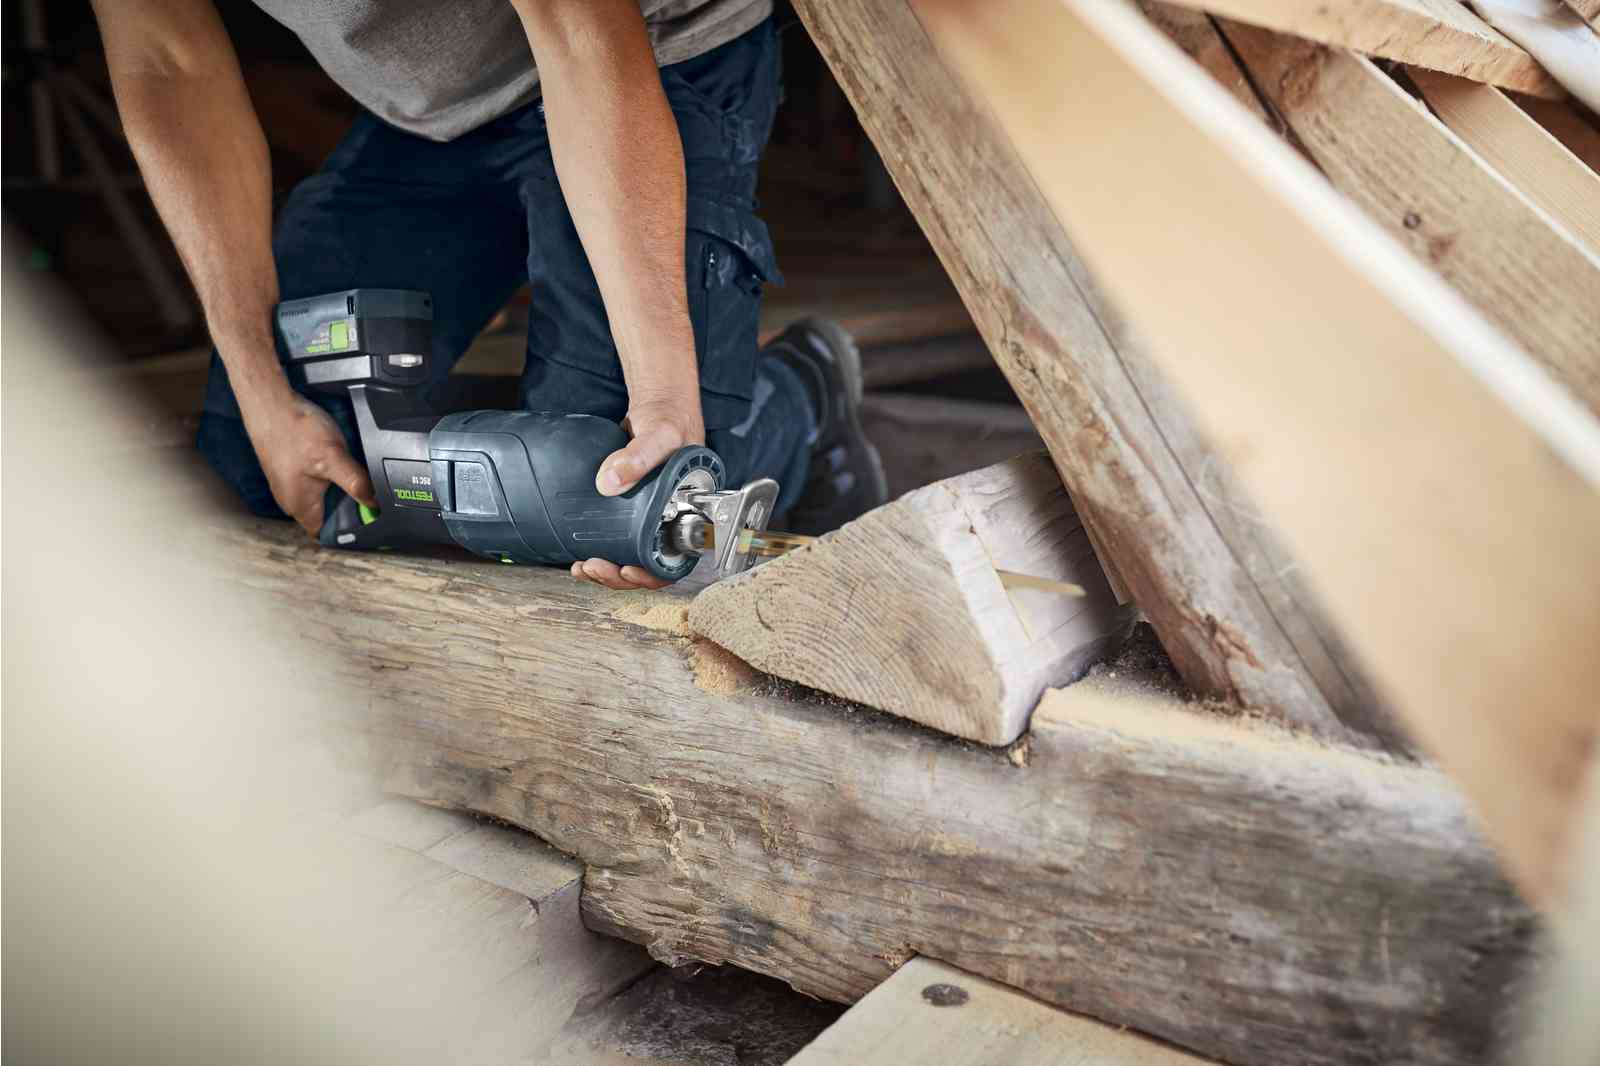 Herramientas Carpenter para la carpintería en cartón de madera